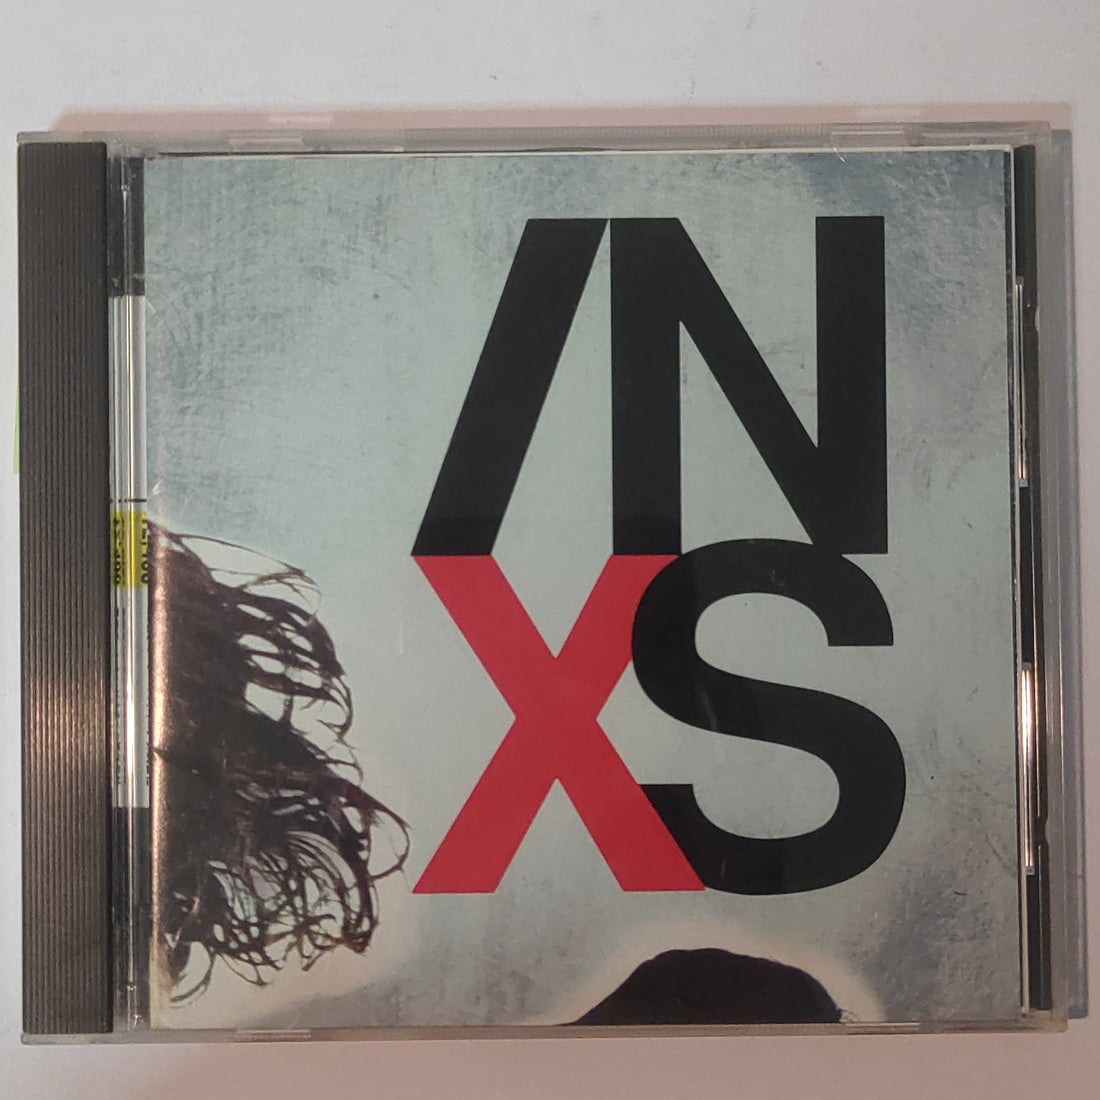 INXS - X (CD) (VG+)